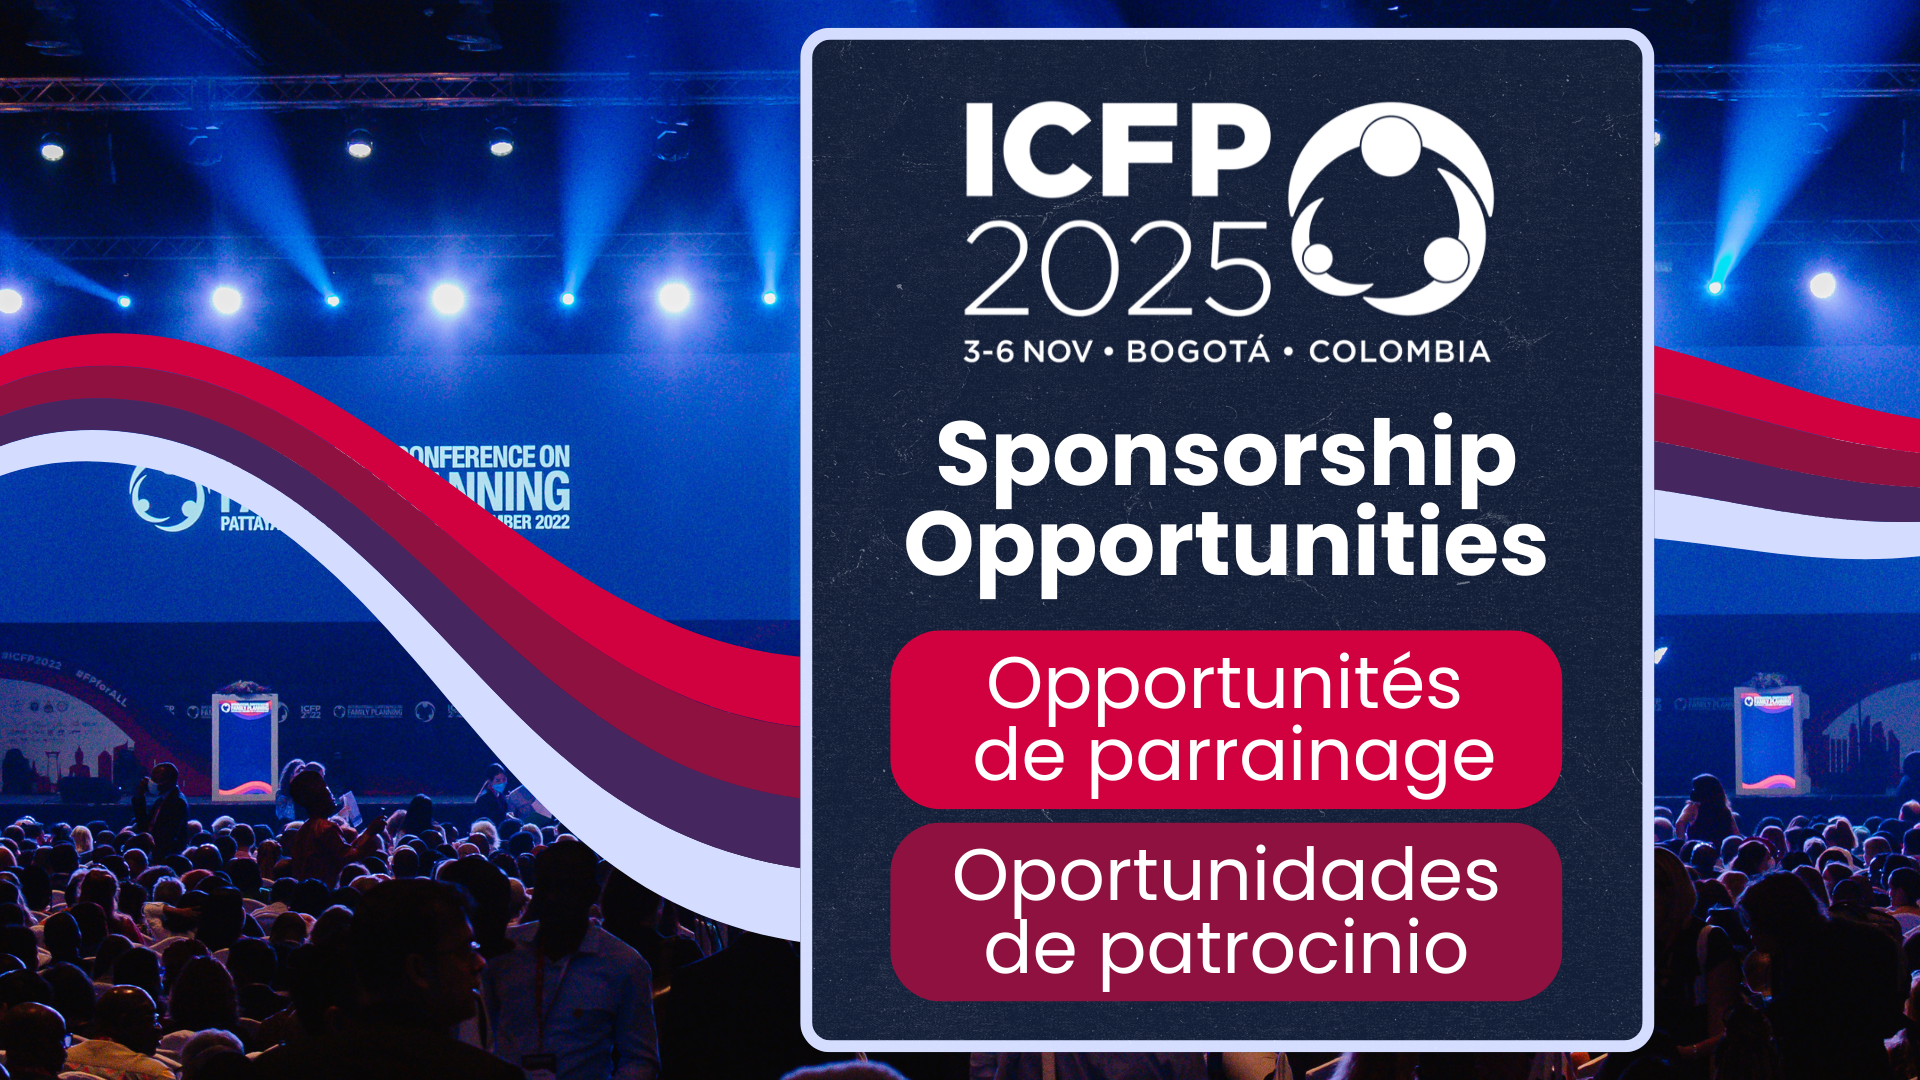 ICFP 2025 dévoile de nouveaux avantages et de nouvelles possibilités de parrainage